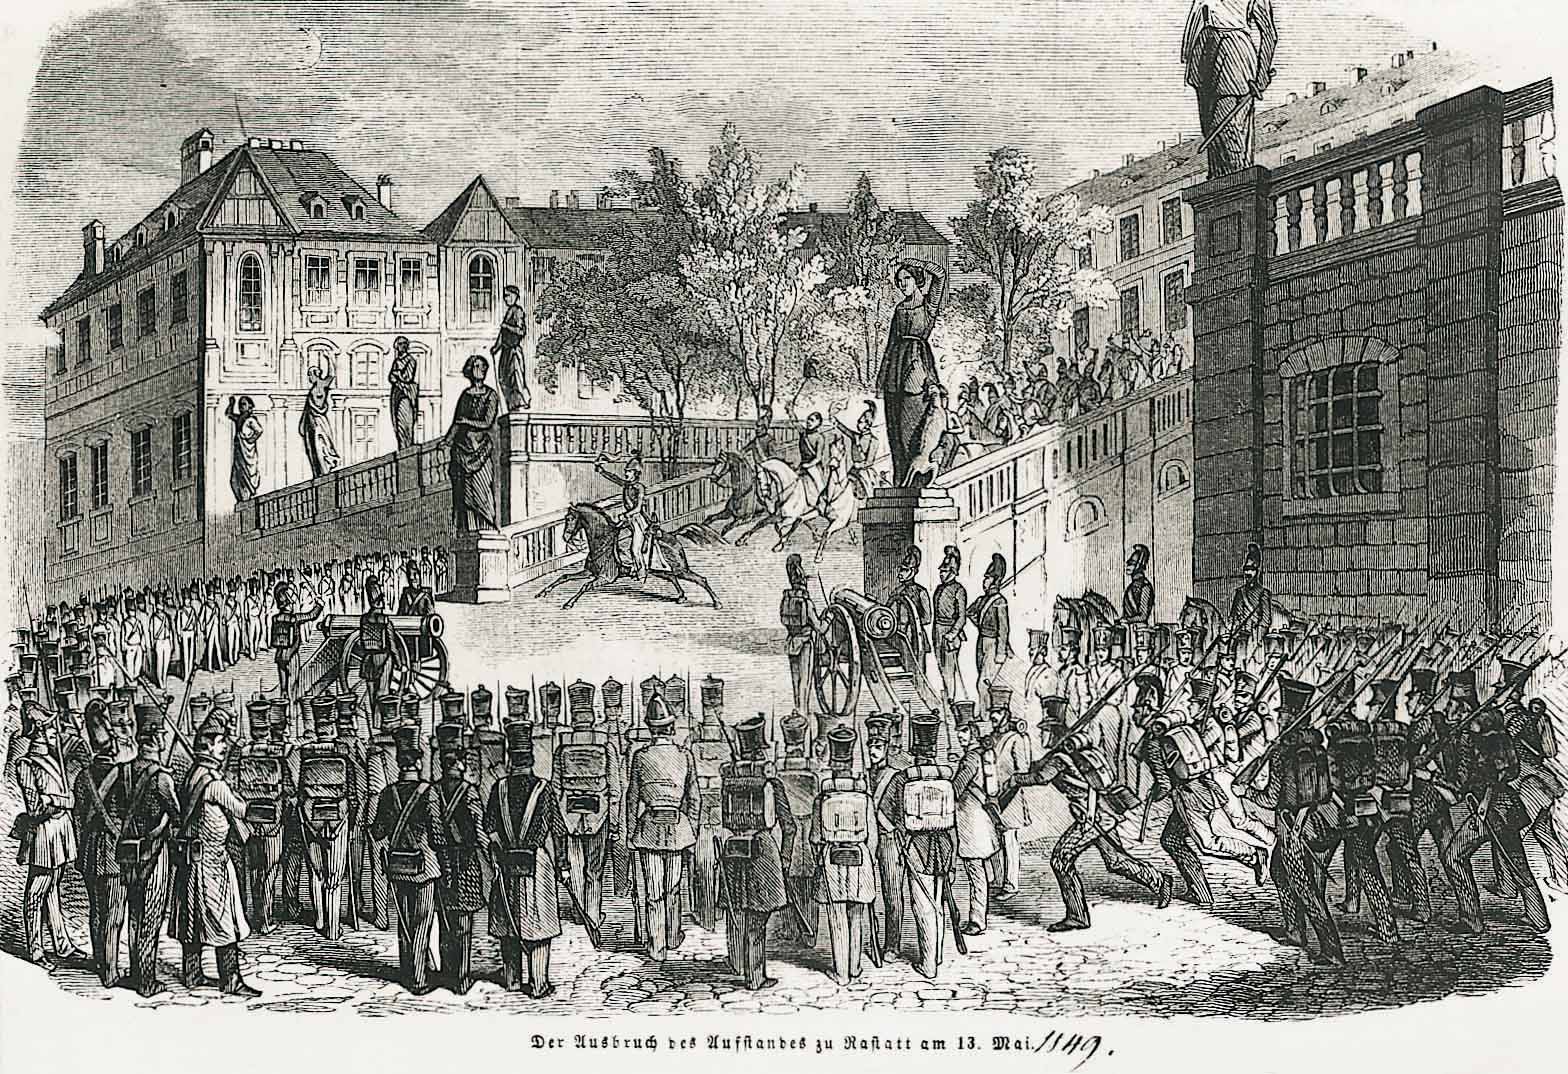 Regierungstreue Offiziere fliehen aus dem von aufständischen Soldaten umringten Schloss am 13. Mai 1849. Copyright: Wikimedia.
